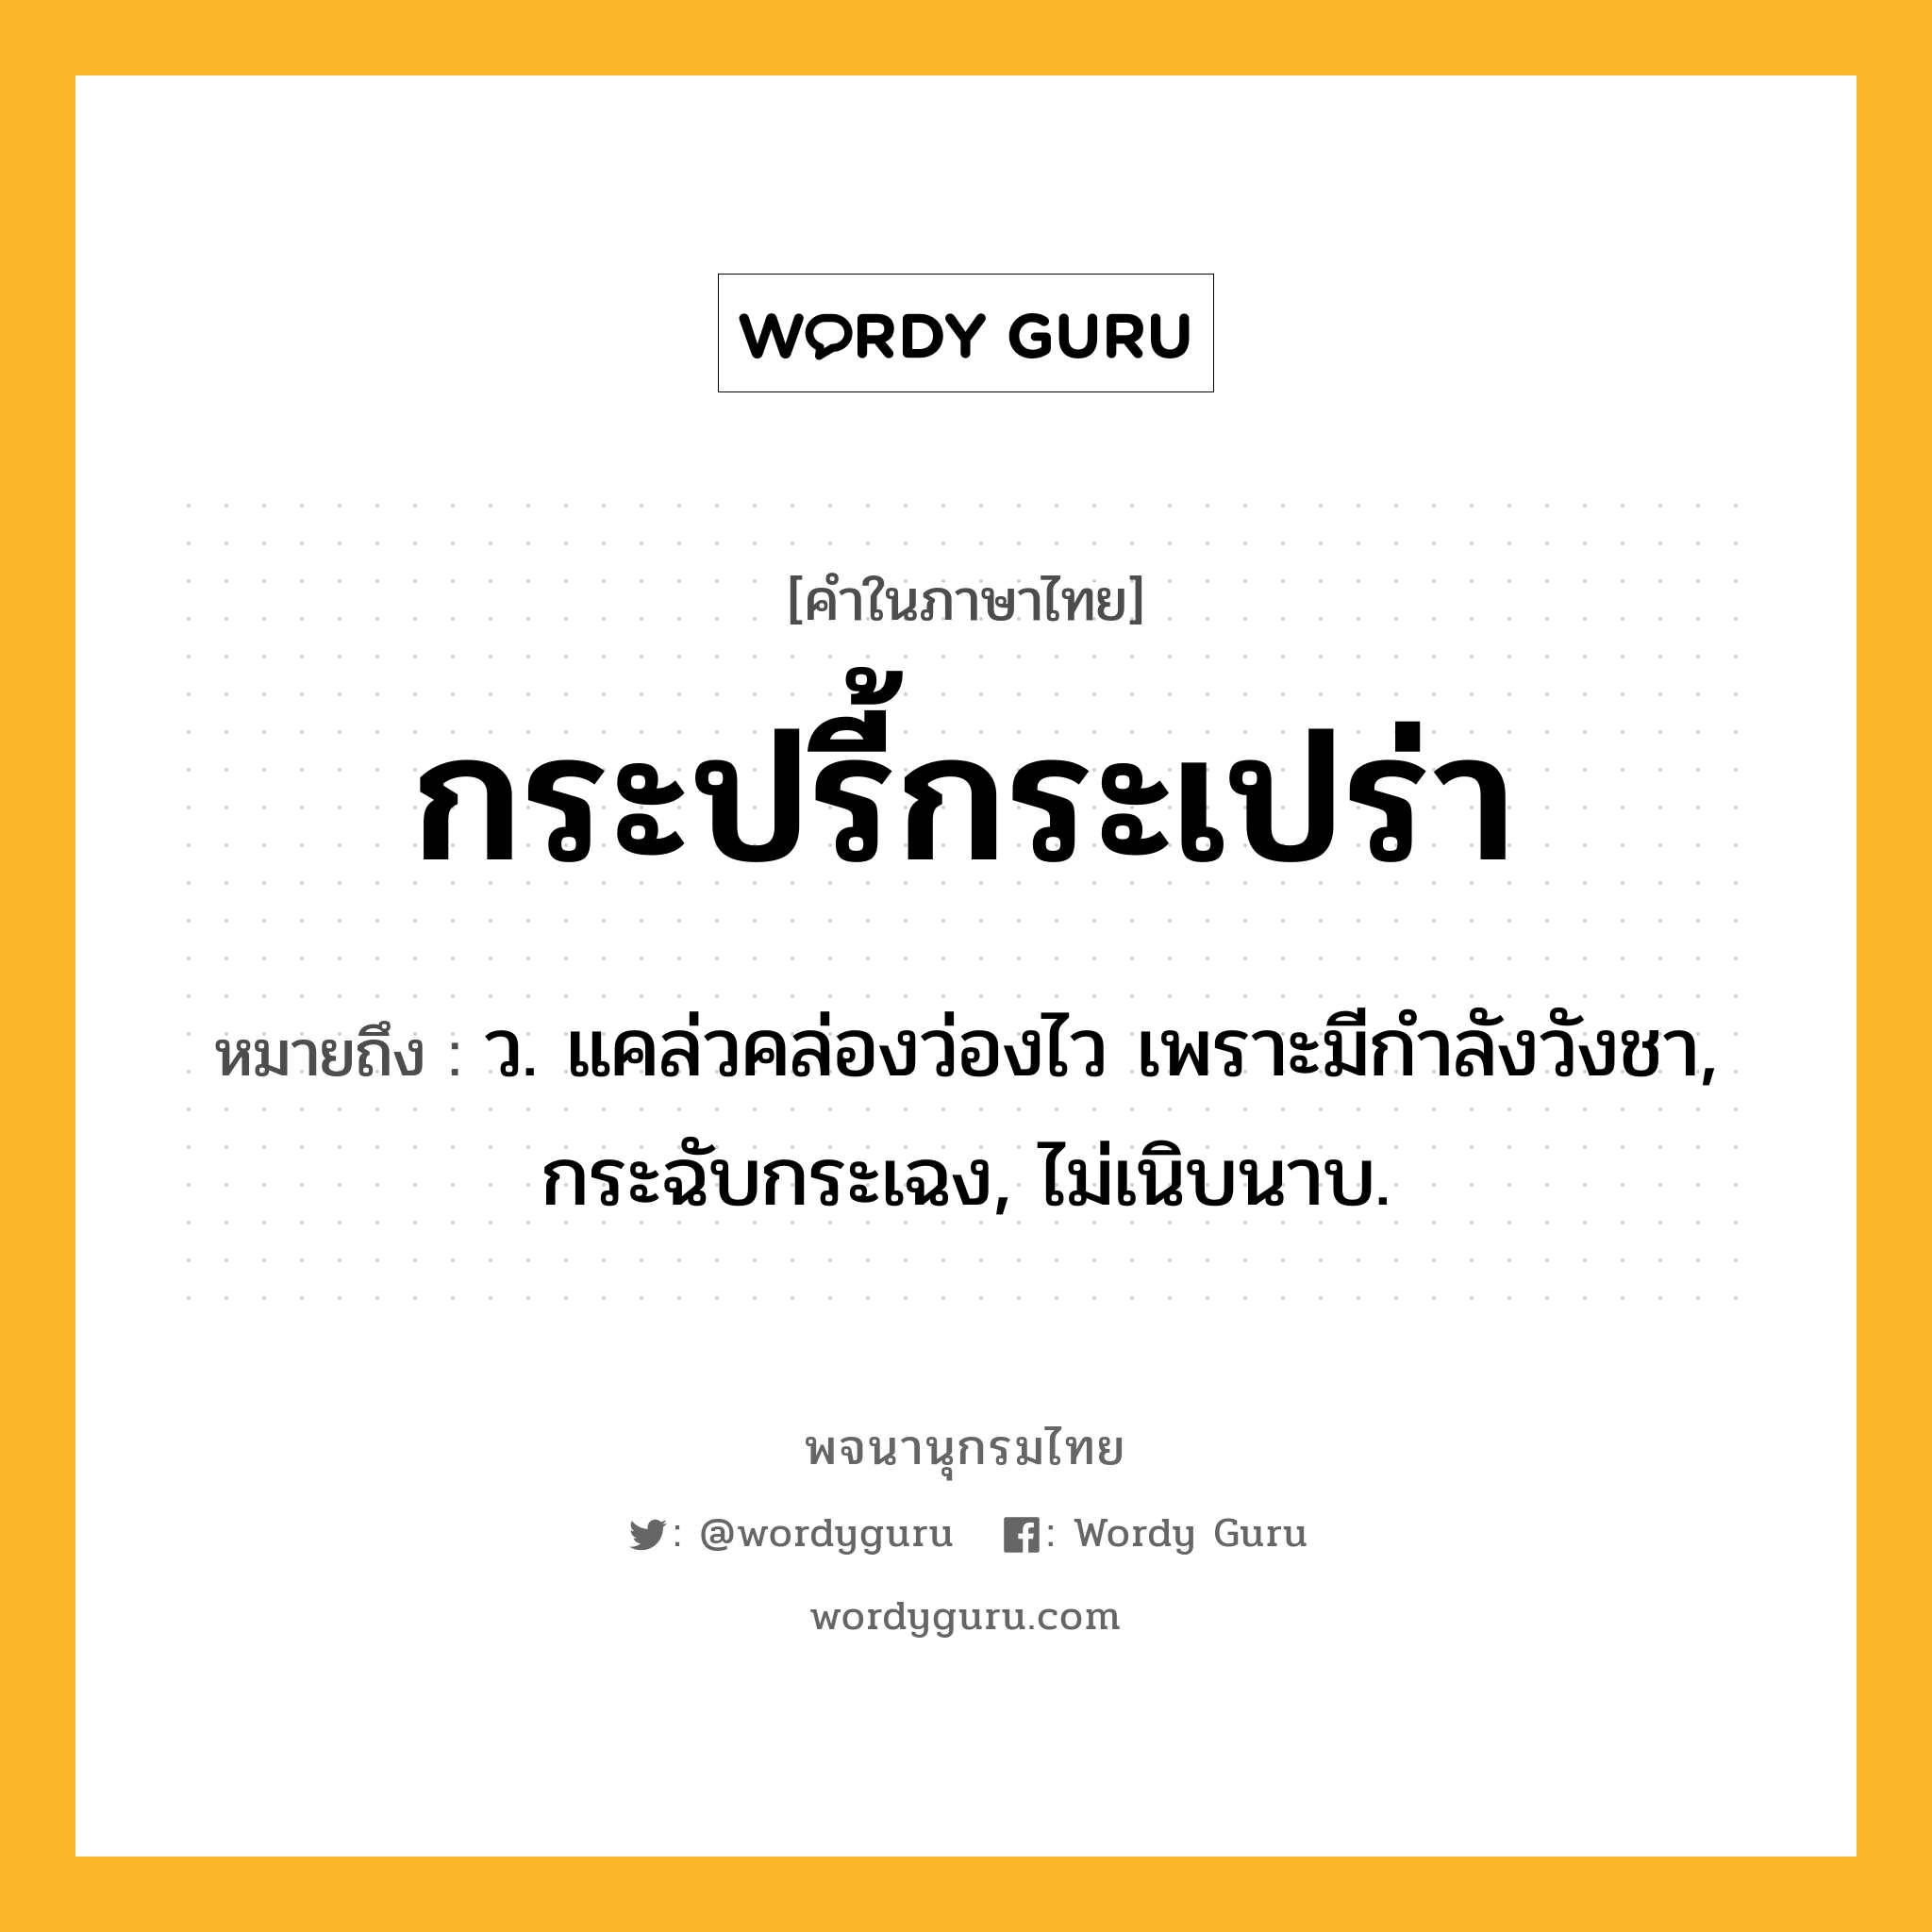 กระปรี้กระเปร่า หมายถึงอะไร?, คำในภาษาไทย กระปรี้กระเปร่า หมายถึง ว. แคล่วคล่องว่องไว เพราะมีกําลังวังชา, กระฉับกระเฉง, ไม่เนิบนาบ.